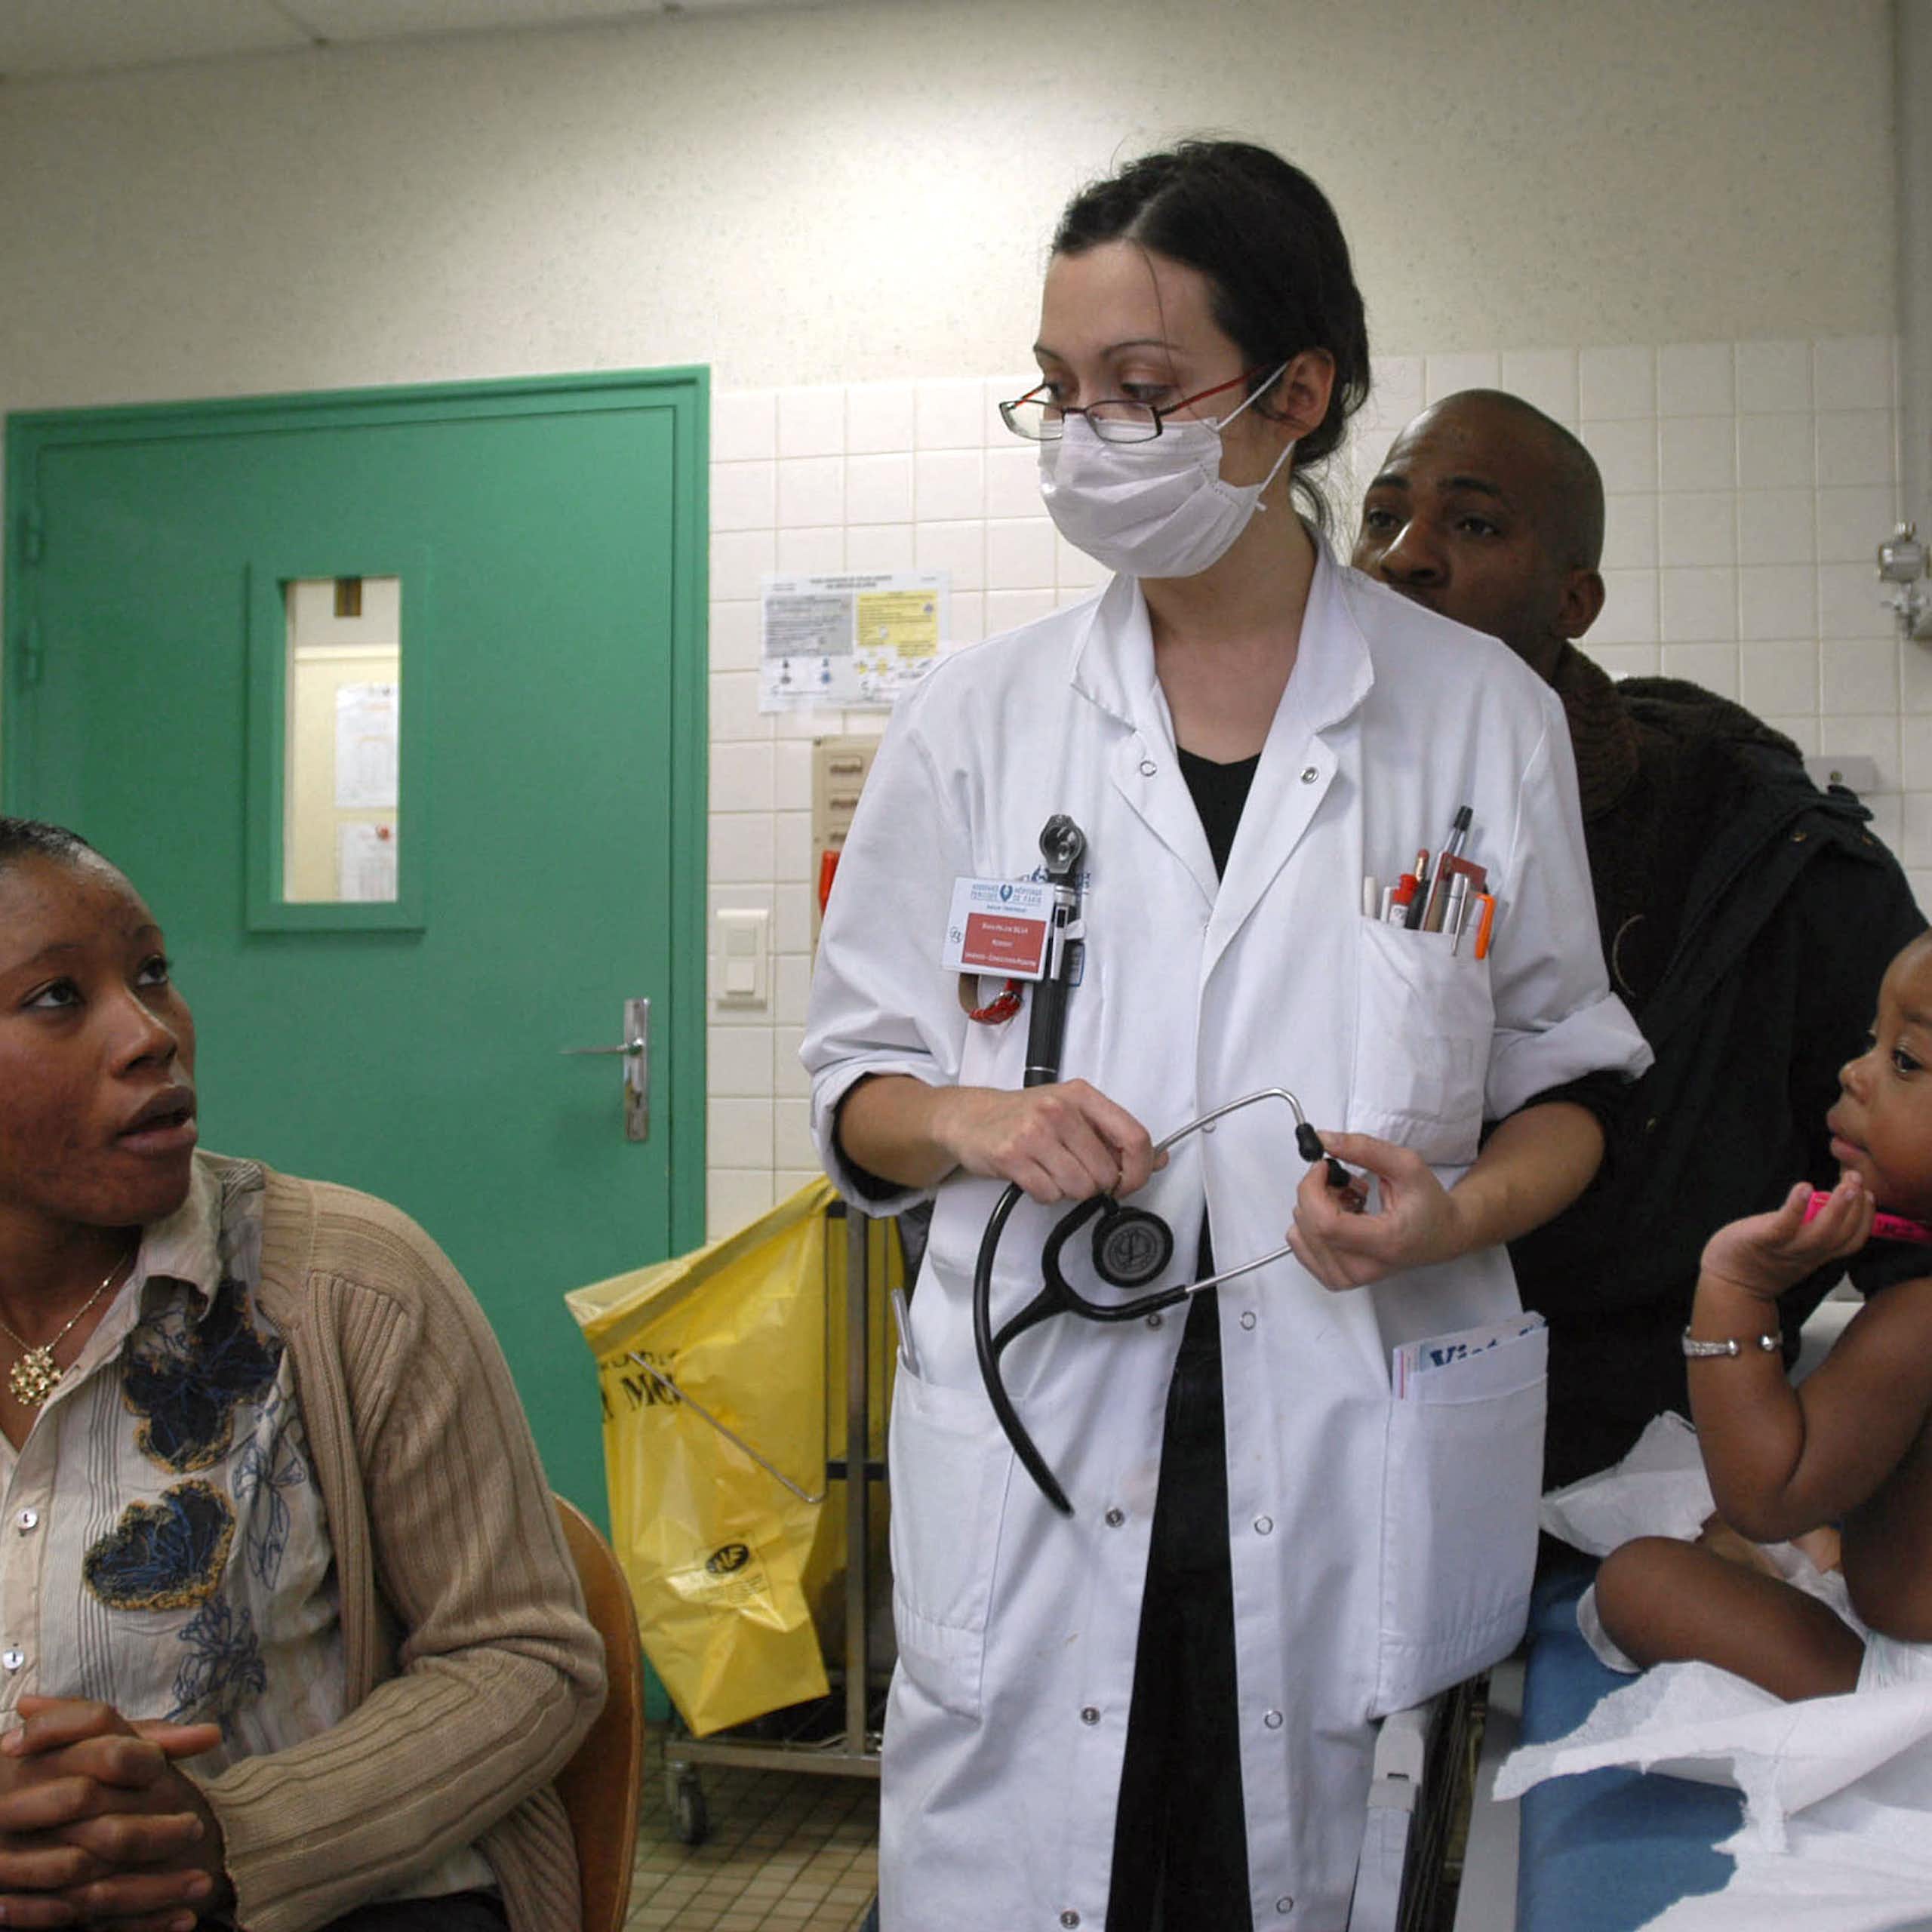 Une professionnelle de santé équipée d'un masque chirurgicale s'occupe d'un jeune enfant malade, en présence de ses parents.